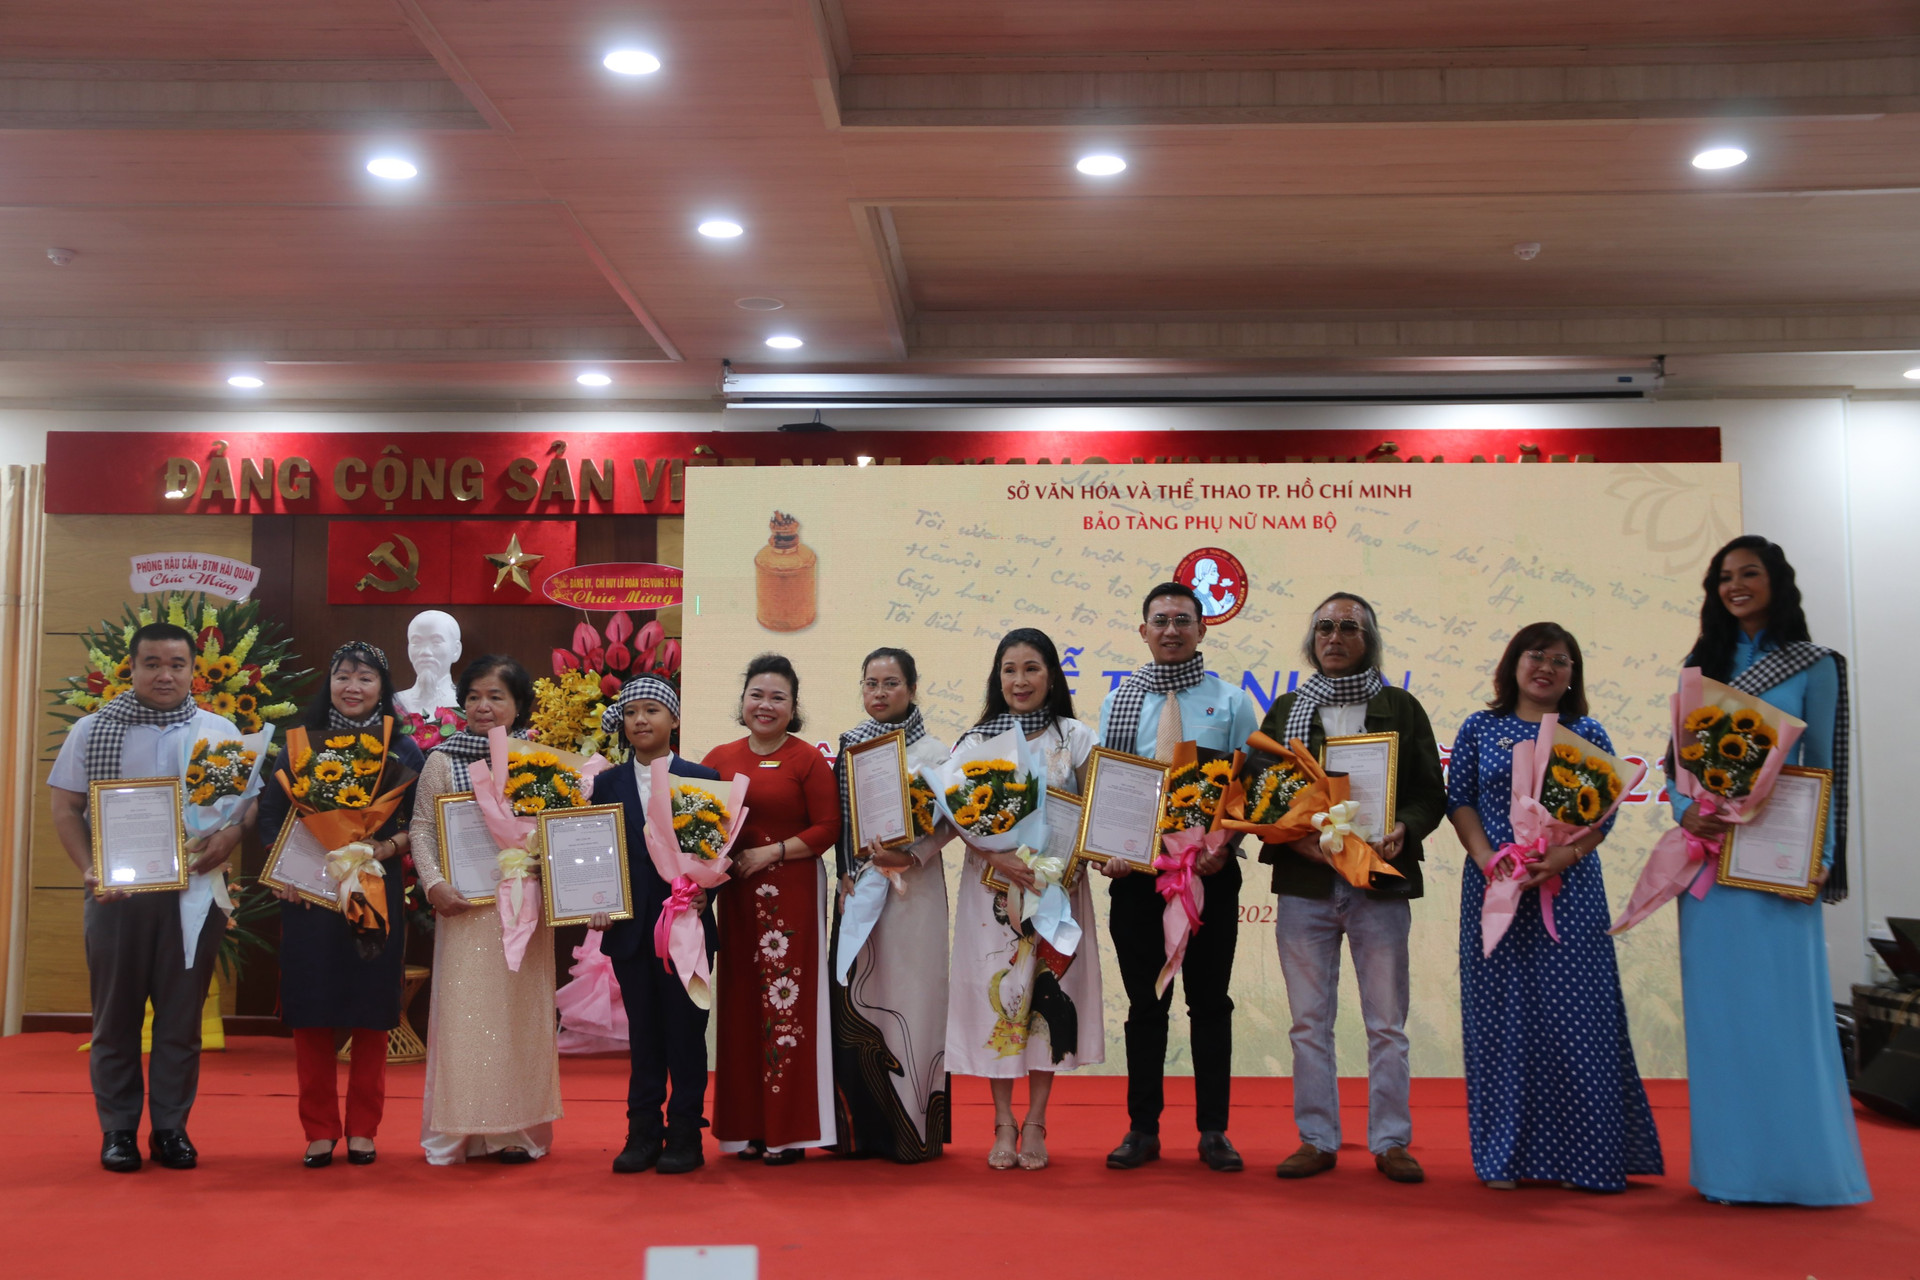 Các đại biểu nhận thư cảm ơn từ bà Bà Nguyễn Thị Thắm, Giám đốc Bảo tàng Phụ nữ Nam Bộ TP.HCM.